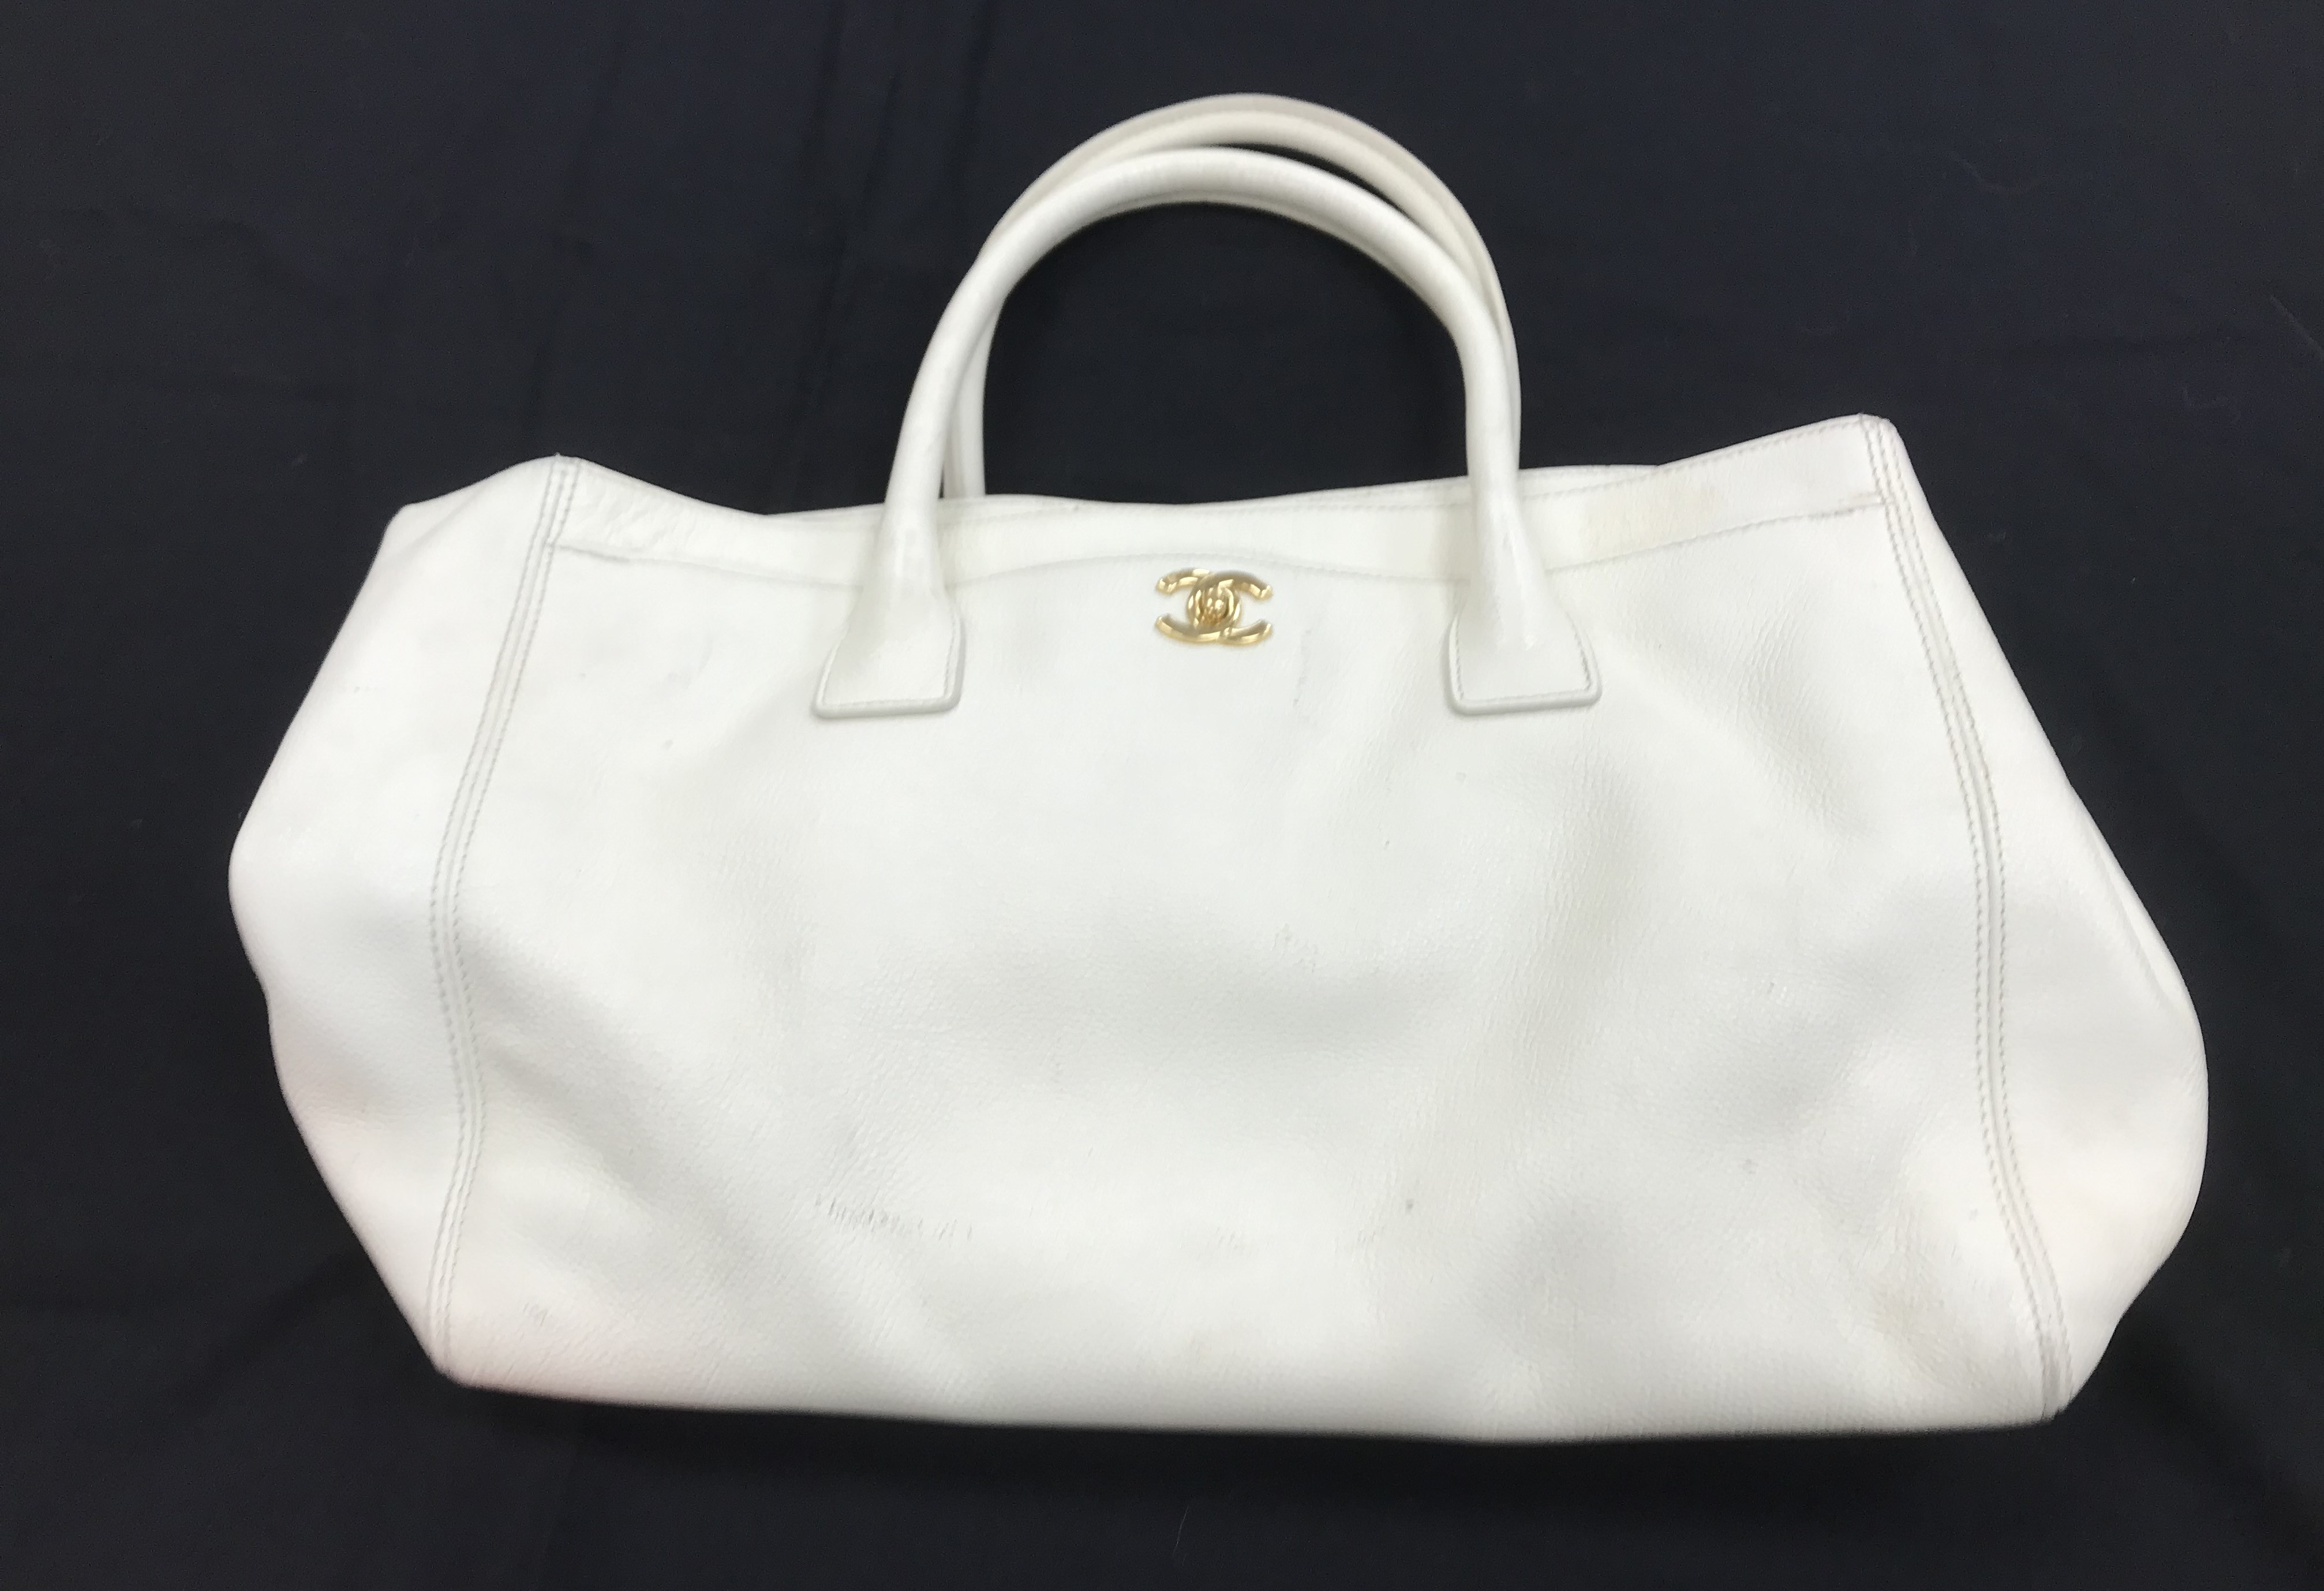 A Chanel Cerf bag in white grain calves